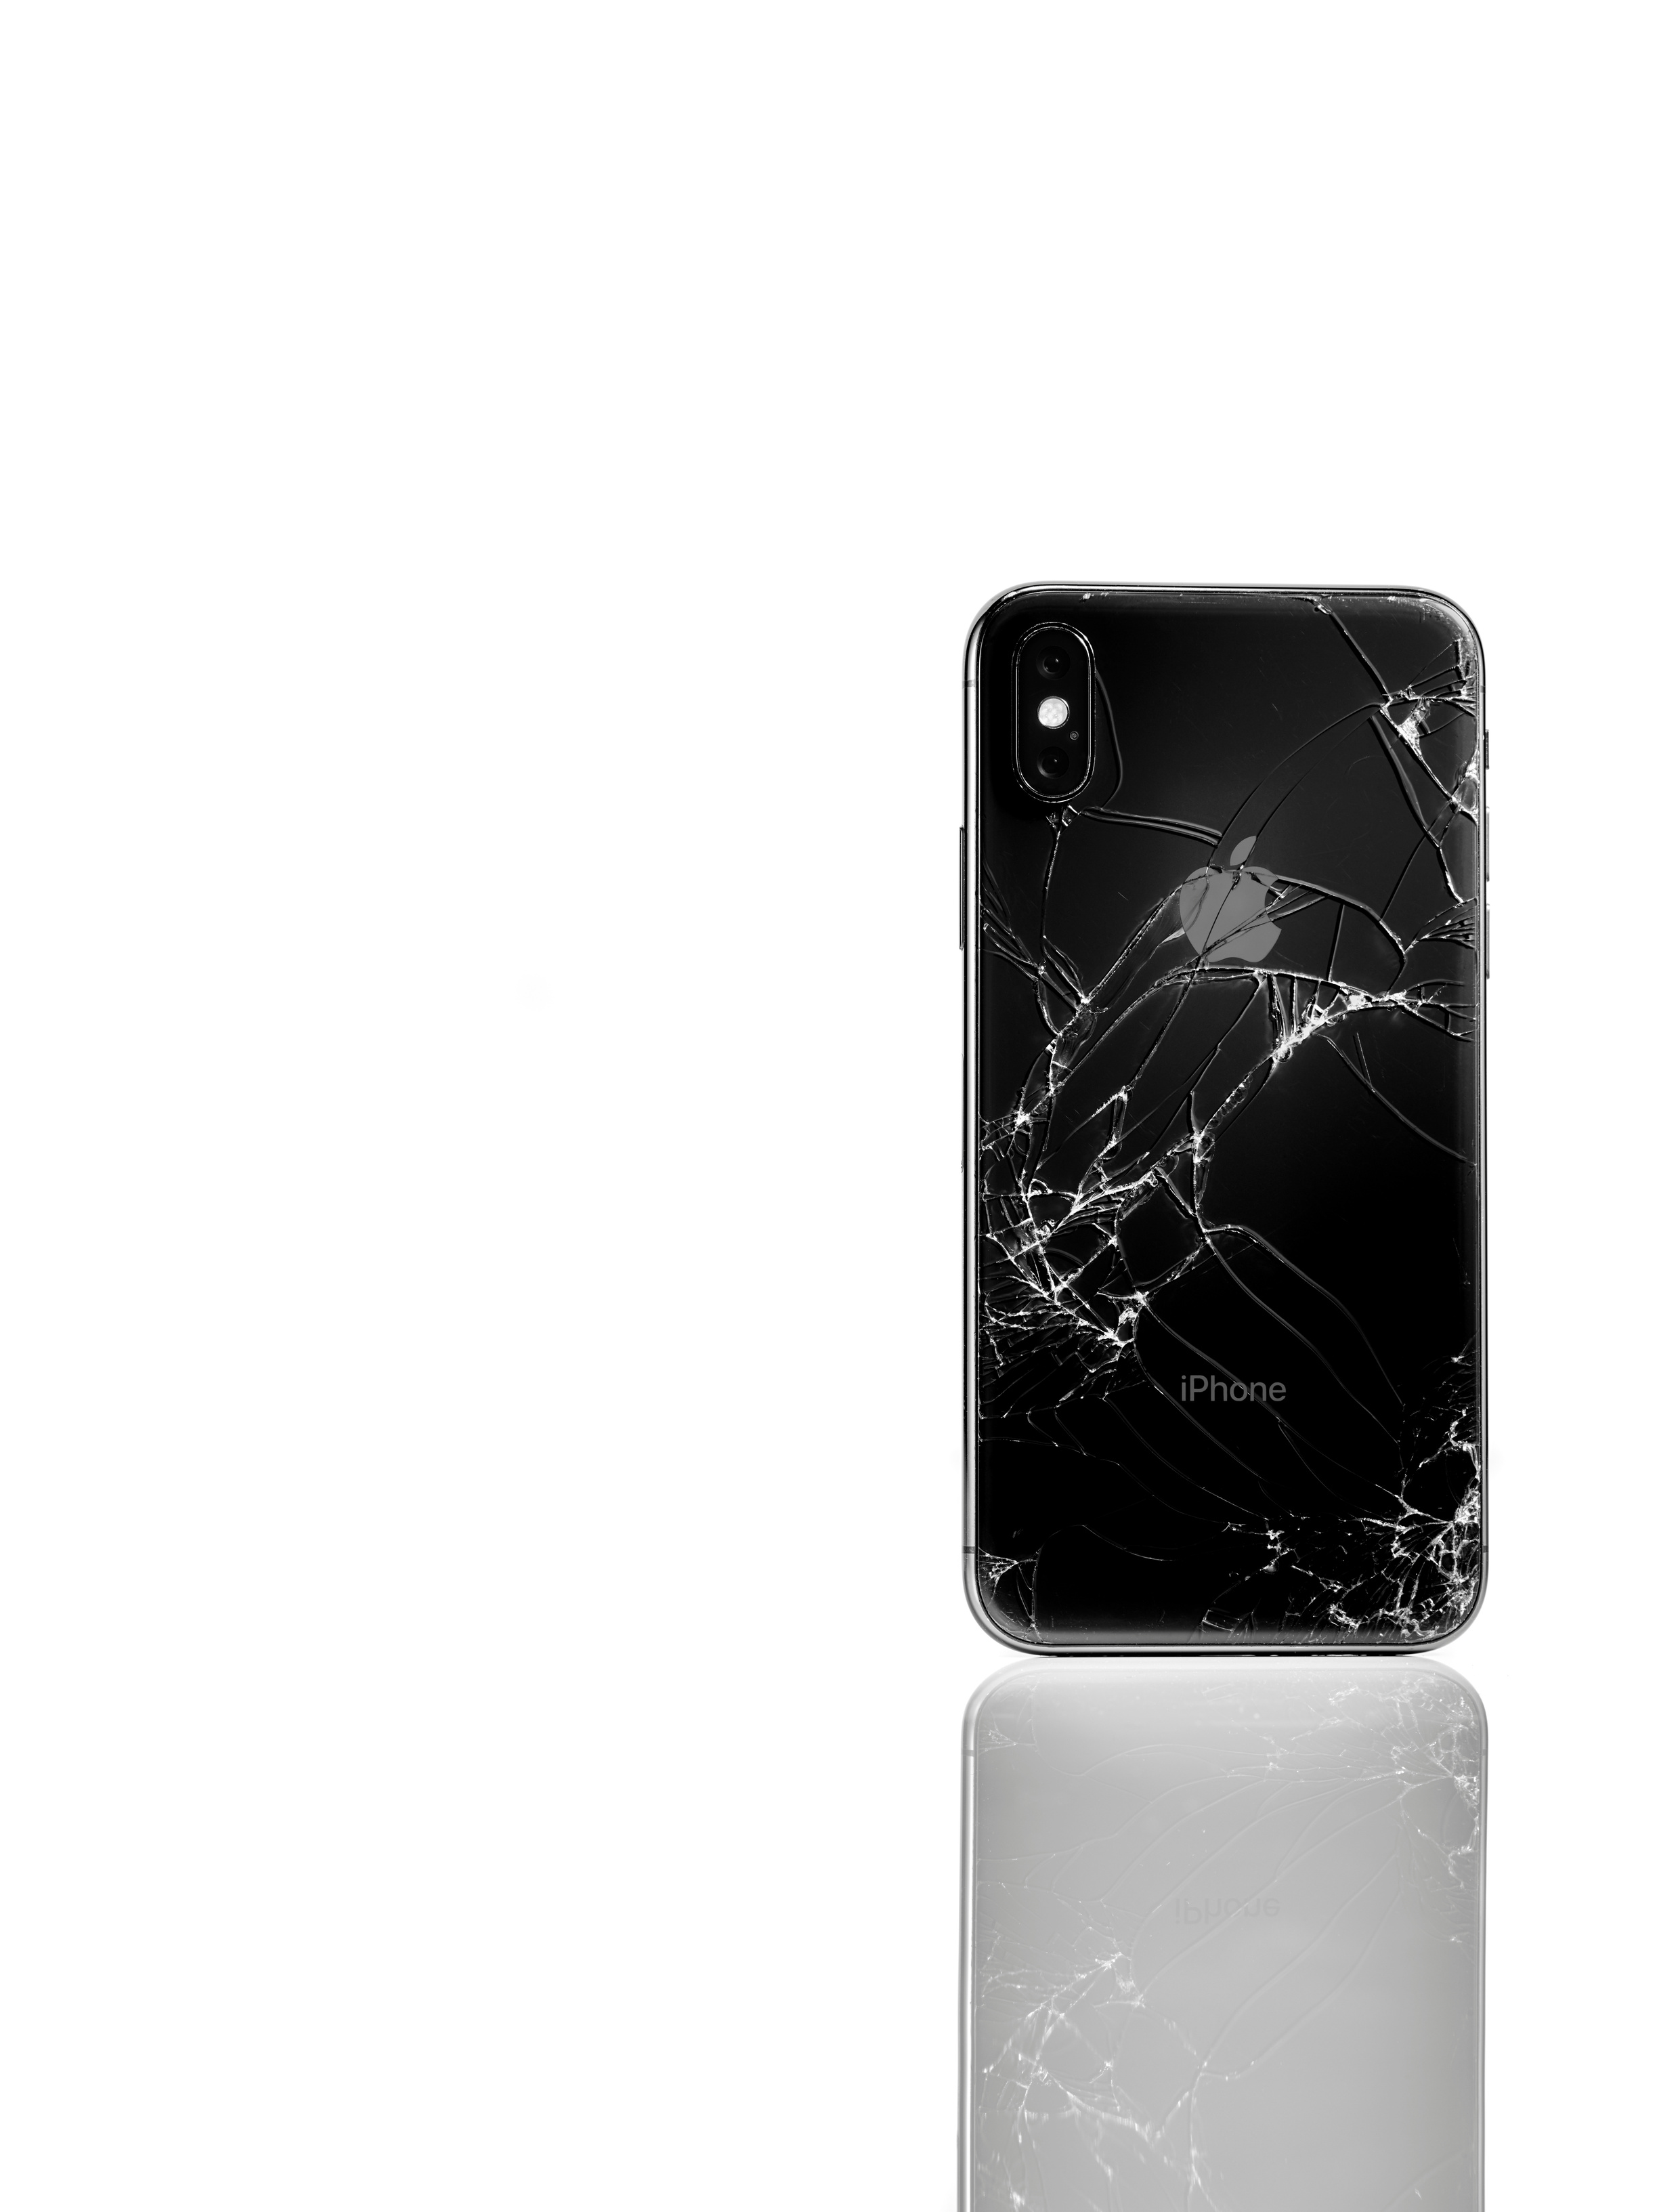 Cracked iphone